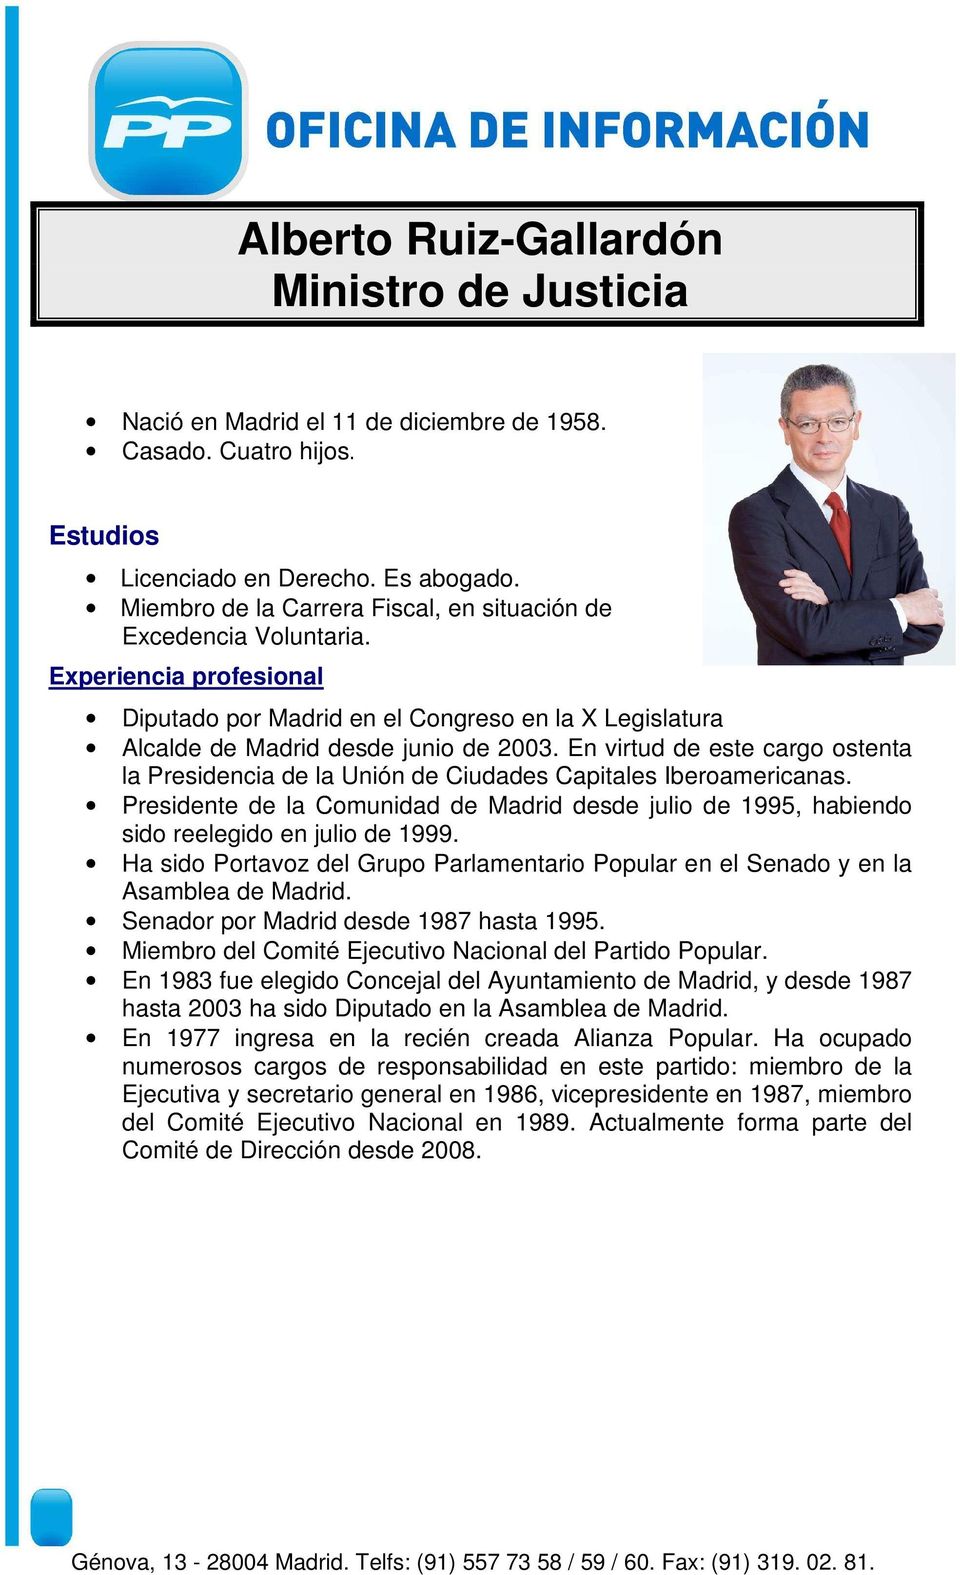 En virtud de este cargo ostenta la Presidencia de la Unión de Ciudades Capitales Iberoamericanas. Presidente de la Comunidad de Madrid desde julio de 1995, habiendo sido reelegido en julio de 1999.